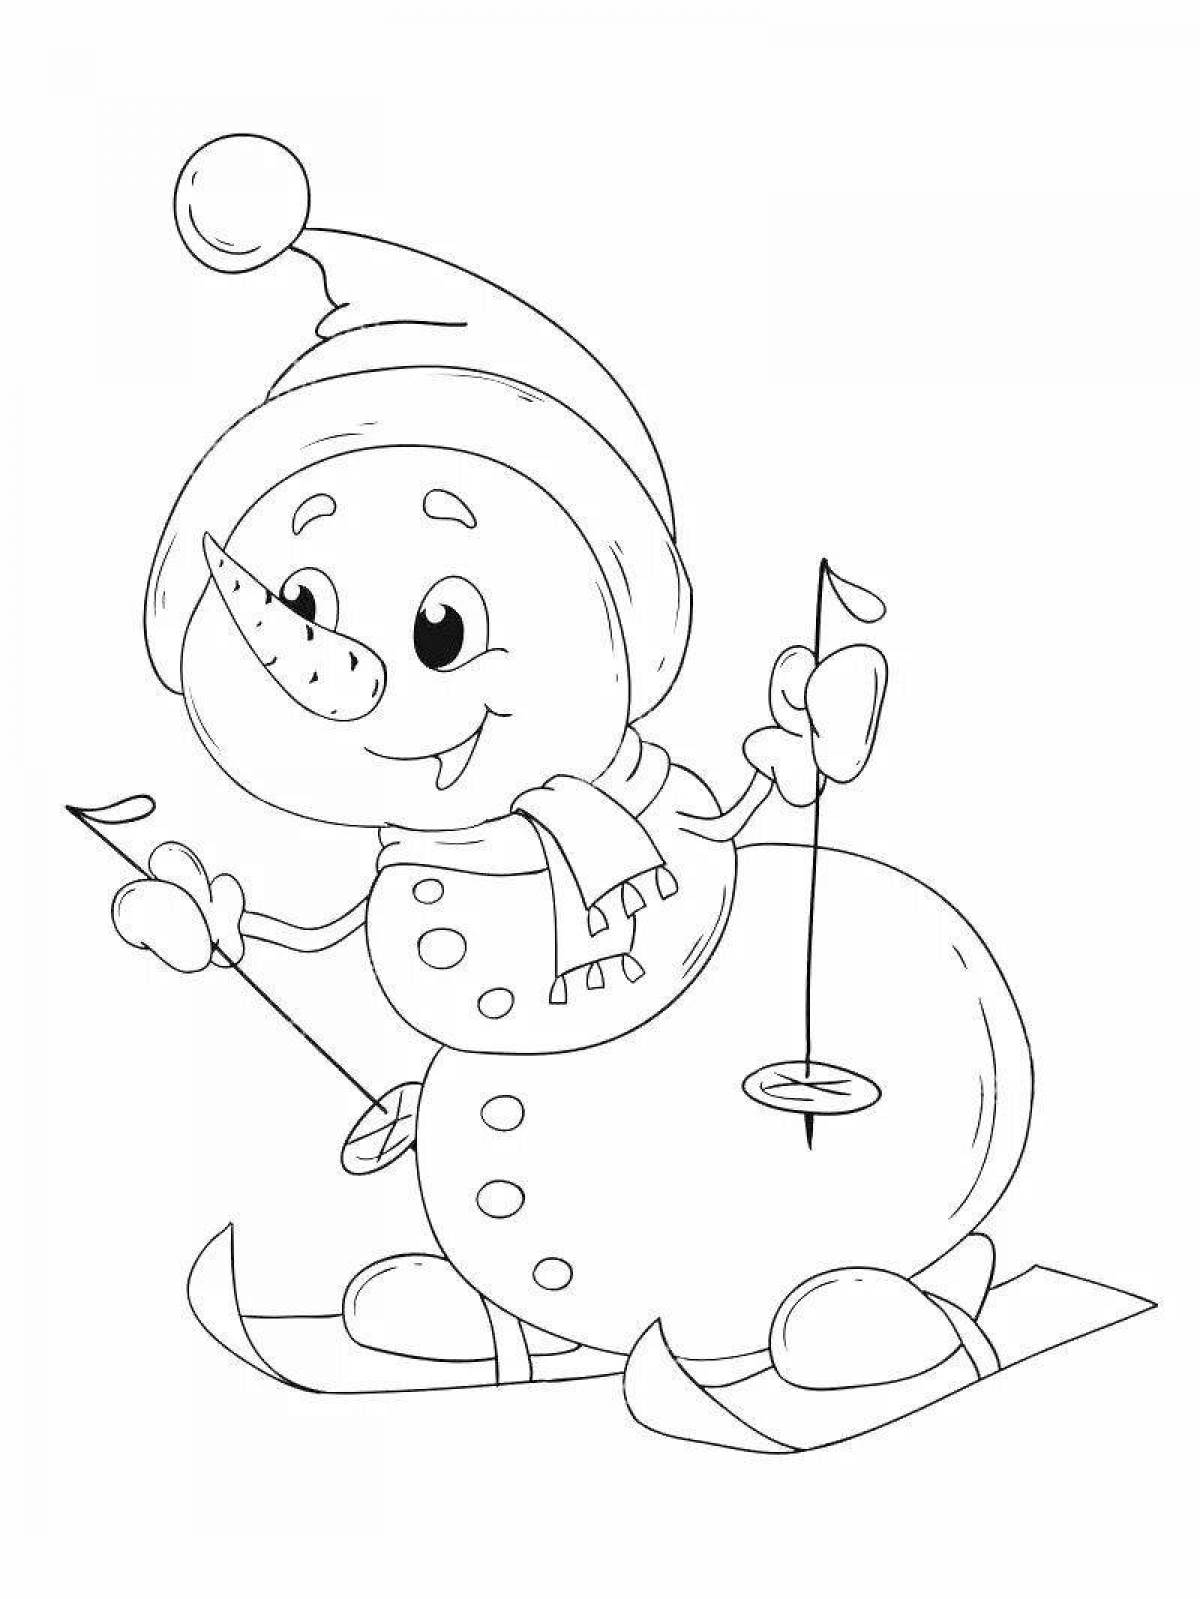 Юмористическая раскраска смешной снеговик для детей